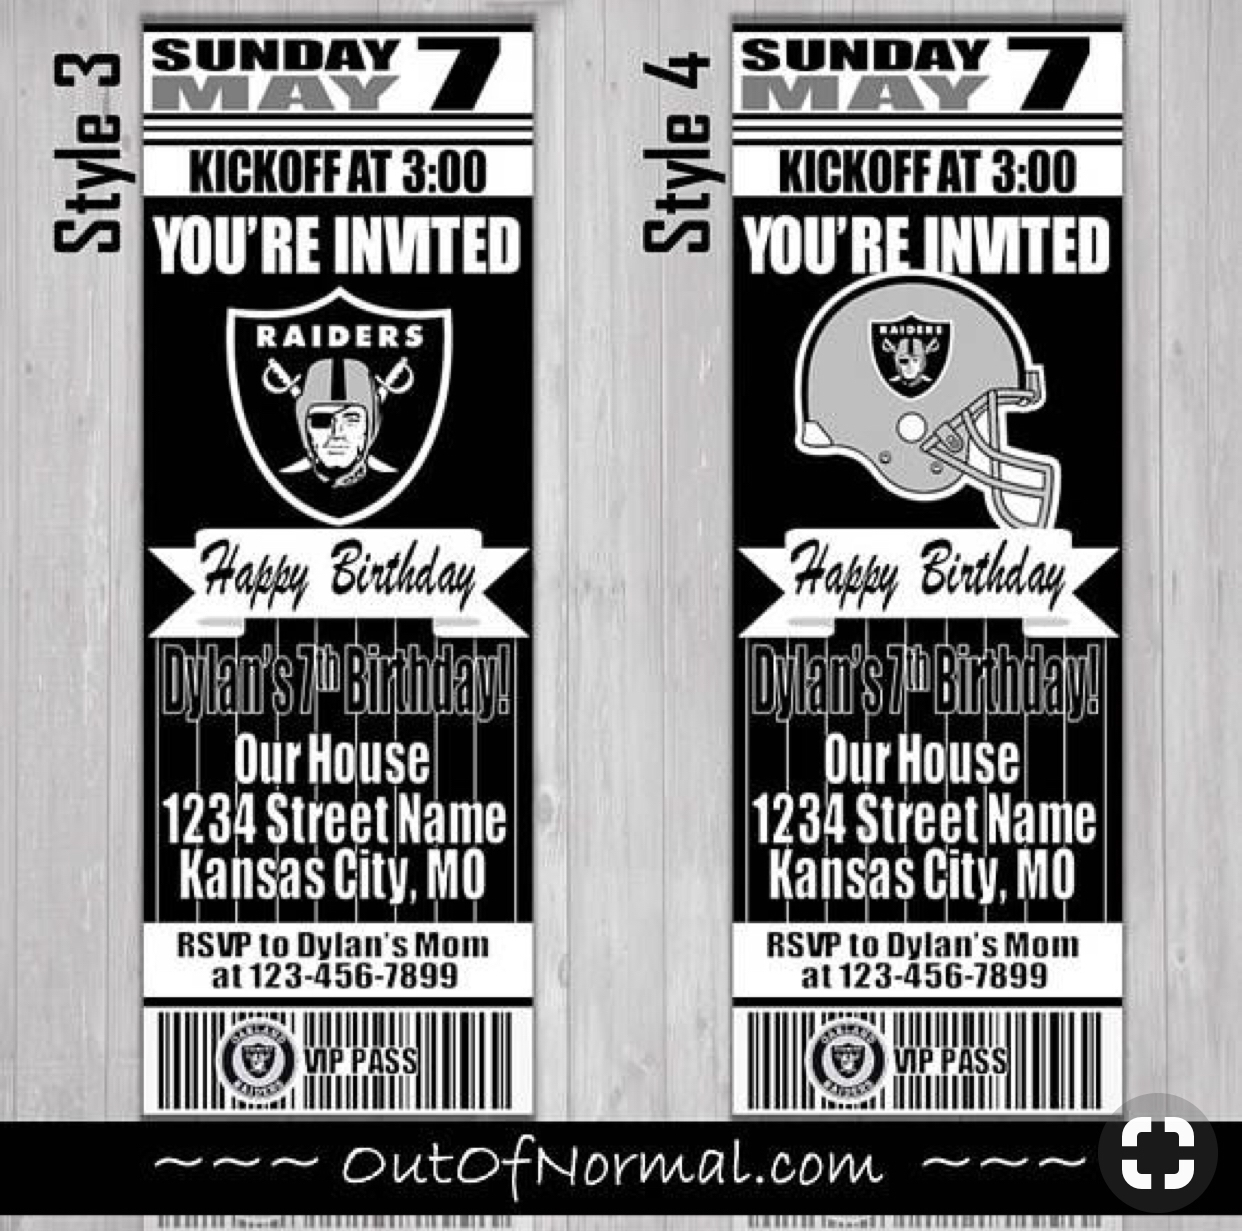 Oakland Raiders Nfl Football Ticket Style Invitation